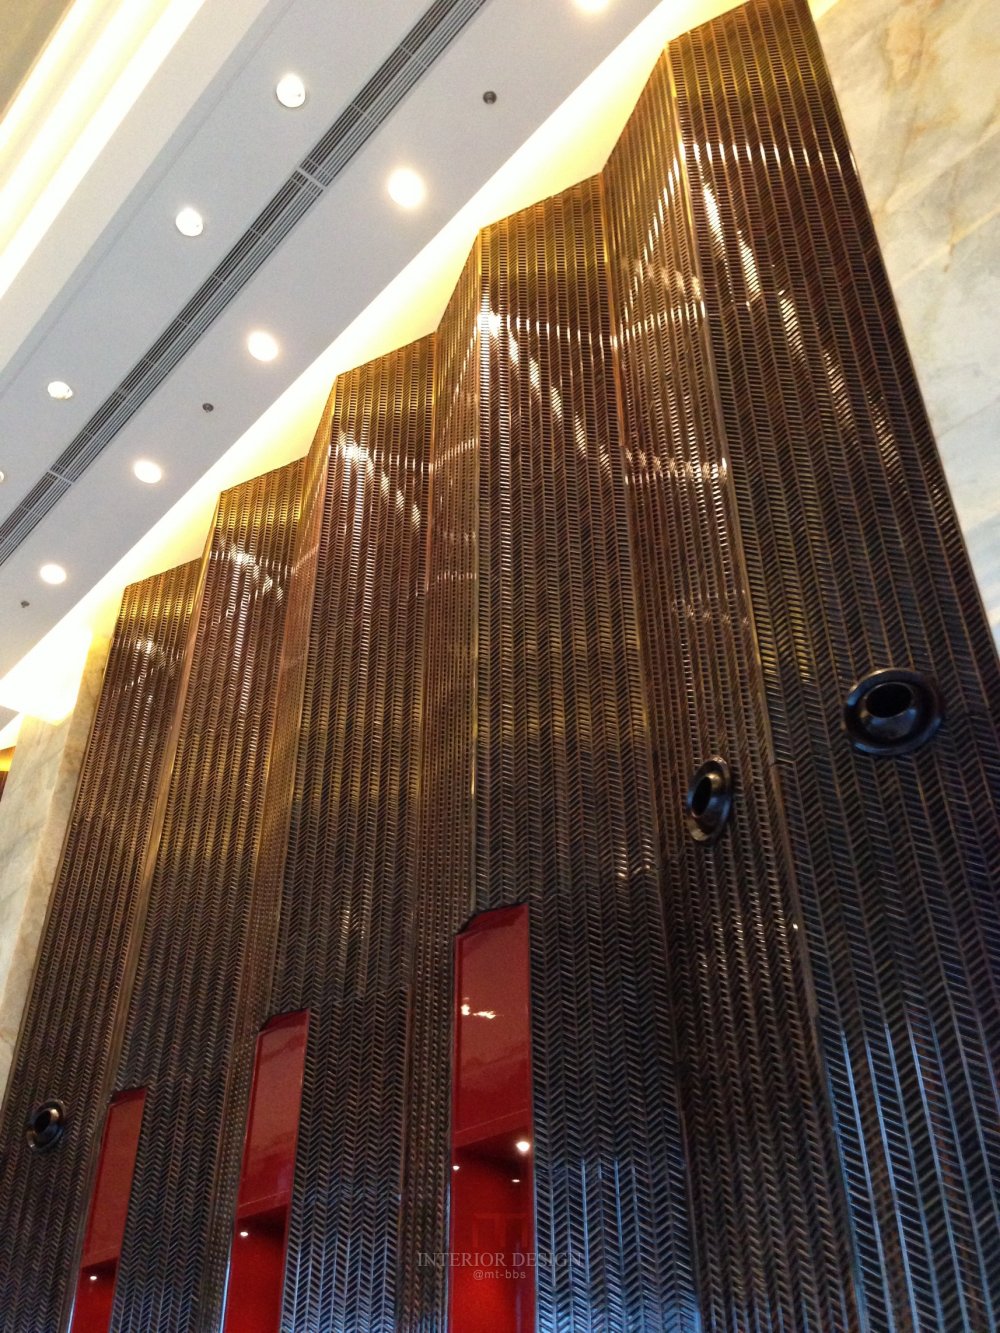 成都丽思卡尔顿酒店The Ritz-Carlton Chengdu(欢迎更新,高分奖励)_IMG_6369.JPG